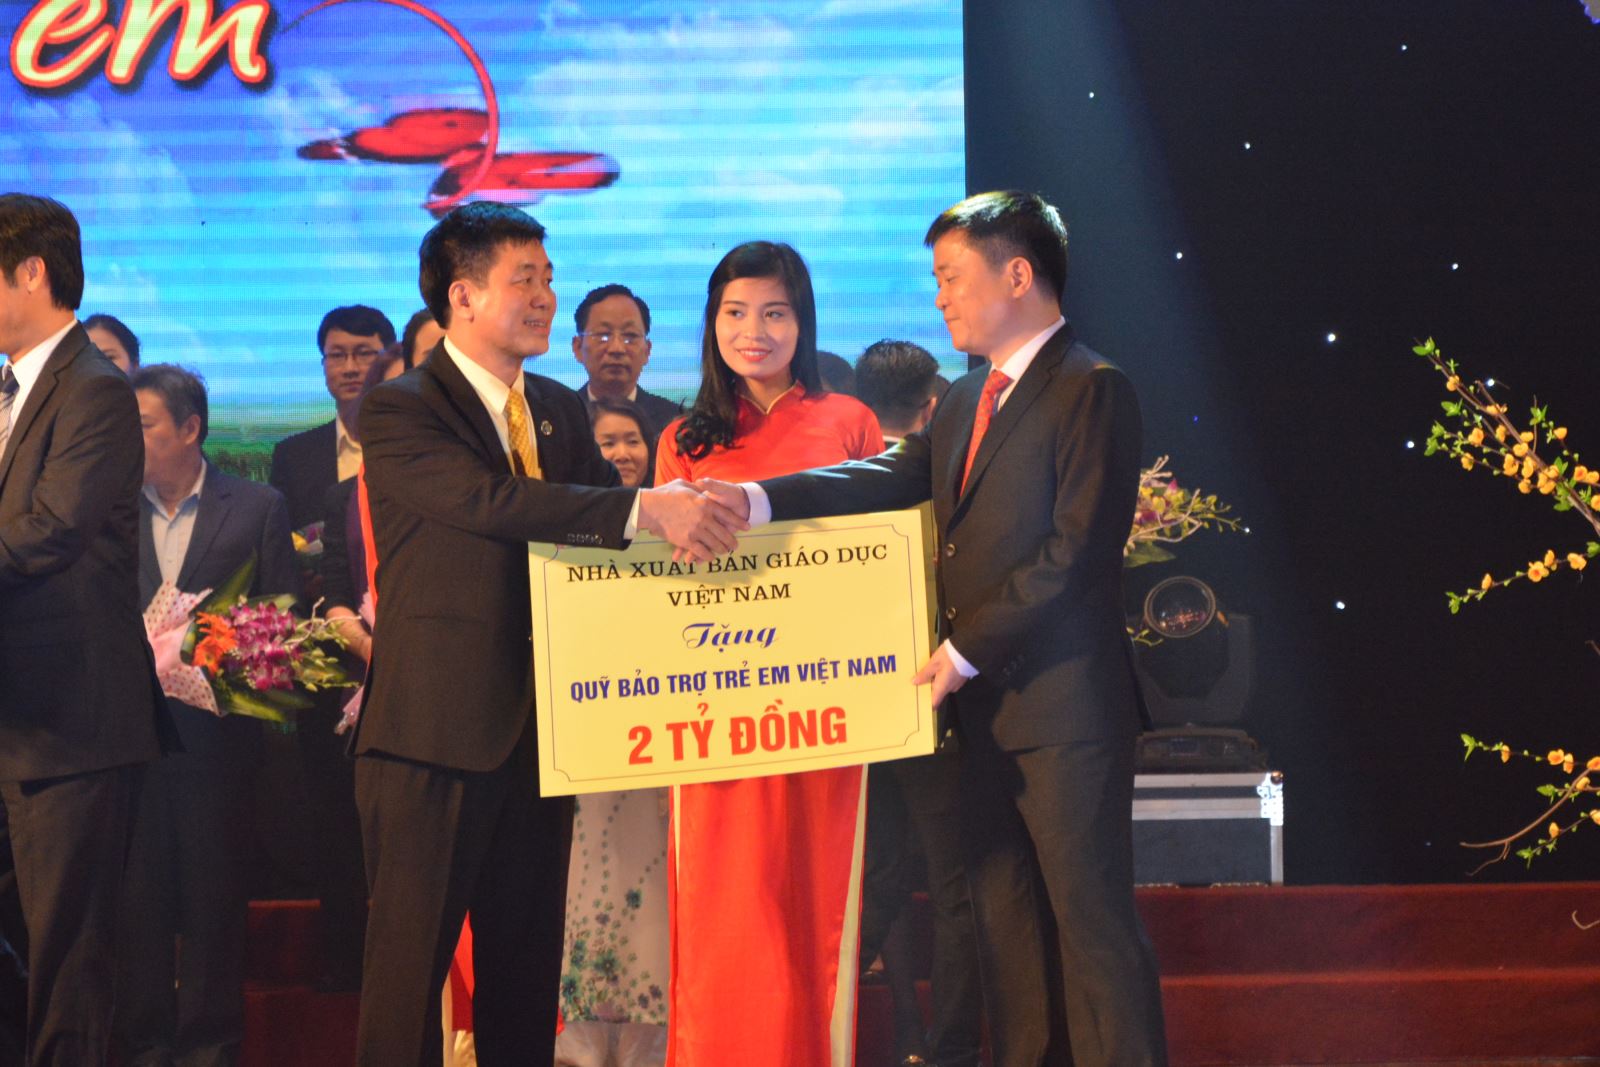 NXB Giáo dục Việt Nam tiếp tục ủng hộ Quỹ bảo trợ trẻ em Việt Nam 2 tỷ đồng